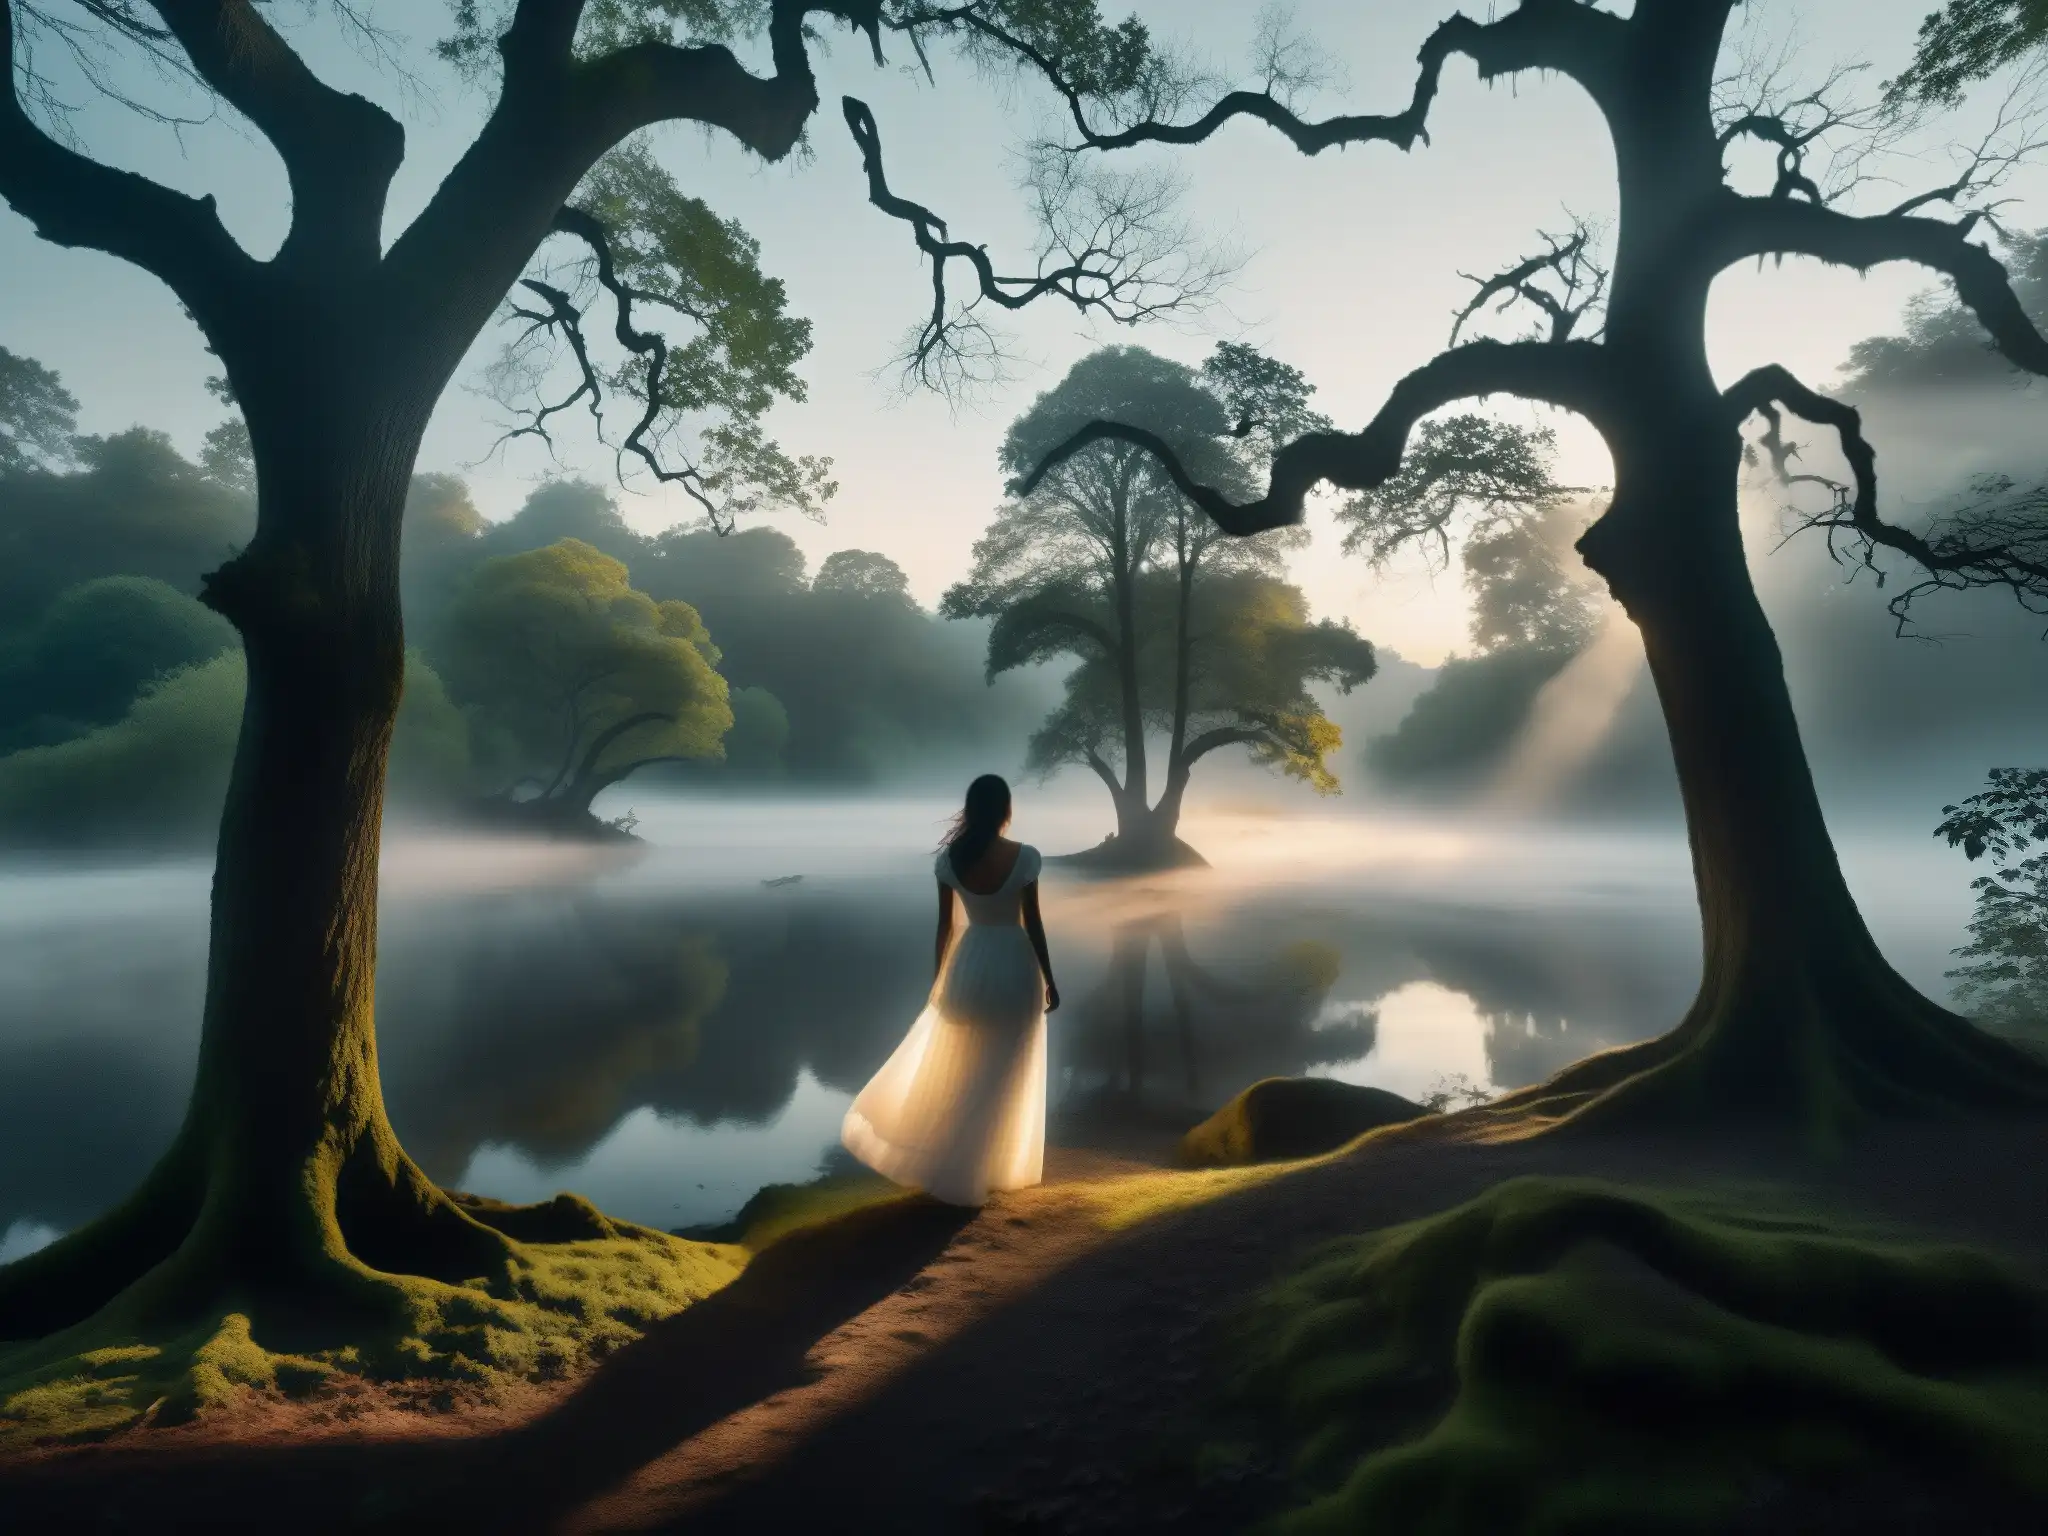 Imagen de un bosque neblinoso y lúgubre con la silueta de una mujer junto a un río oscuro